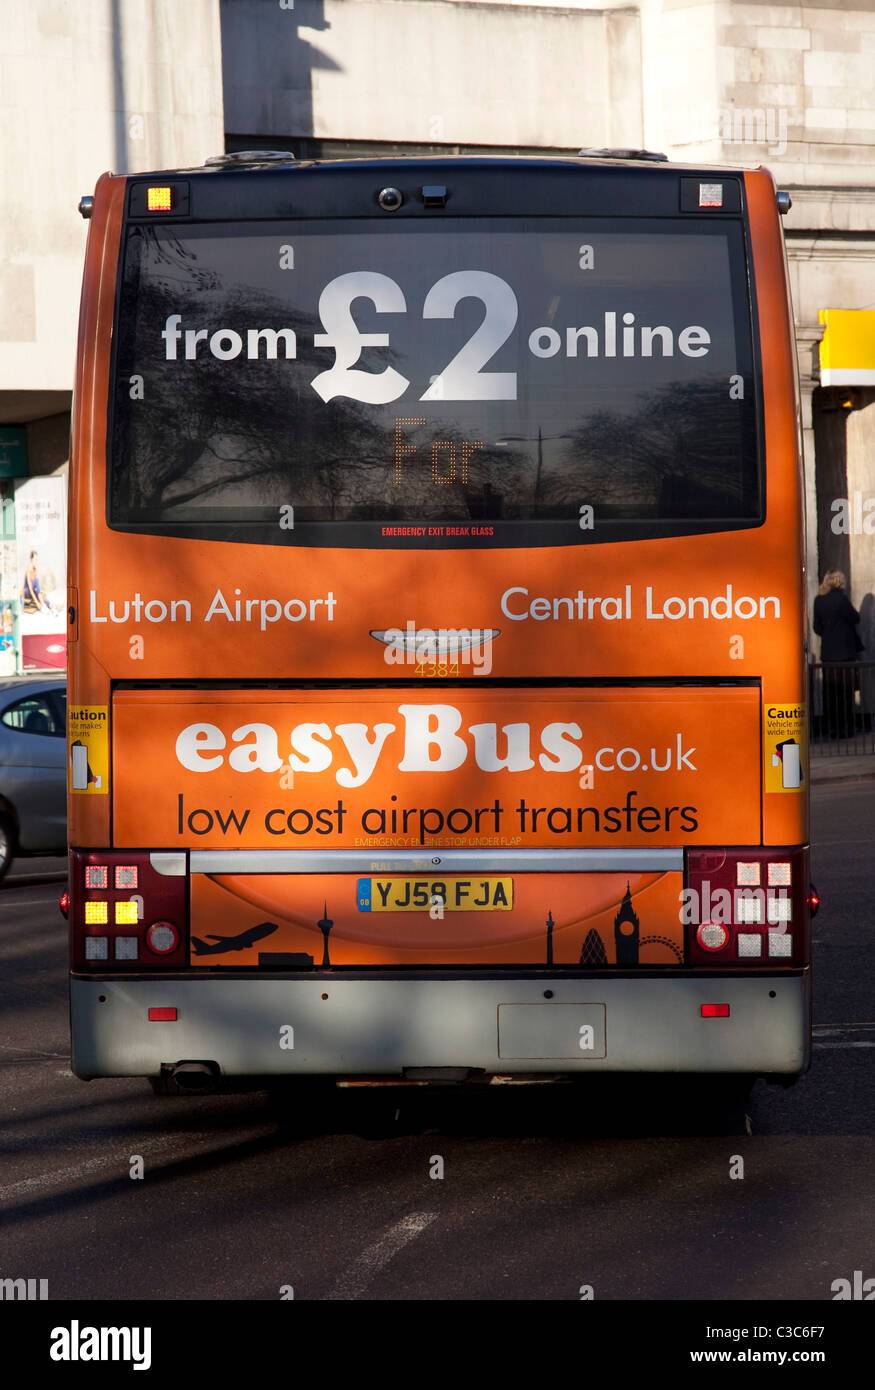 Weiter hinten ein Easyjet Easybus-Bus, für billige Übertragung auf Flüge für die low-cost Fluggesellschaft verwendet. Stockfoto